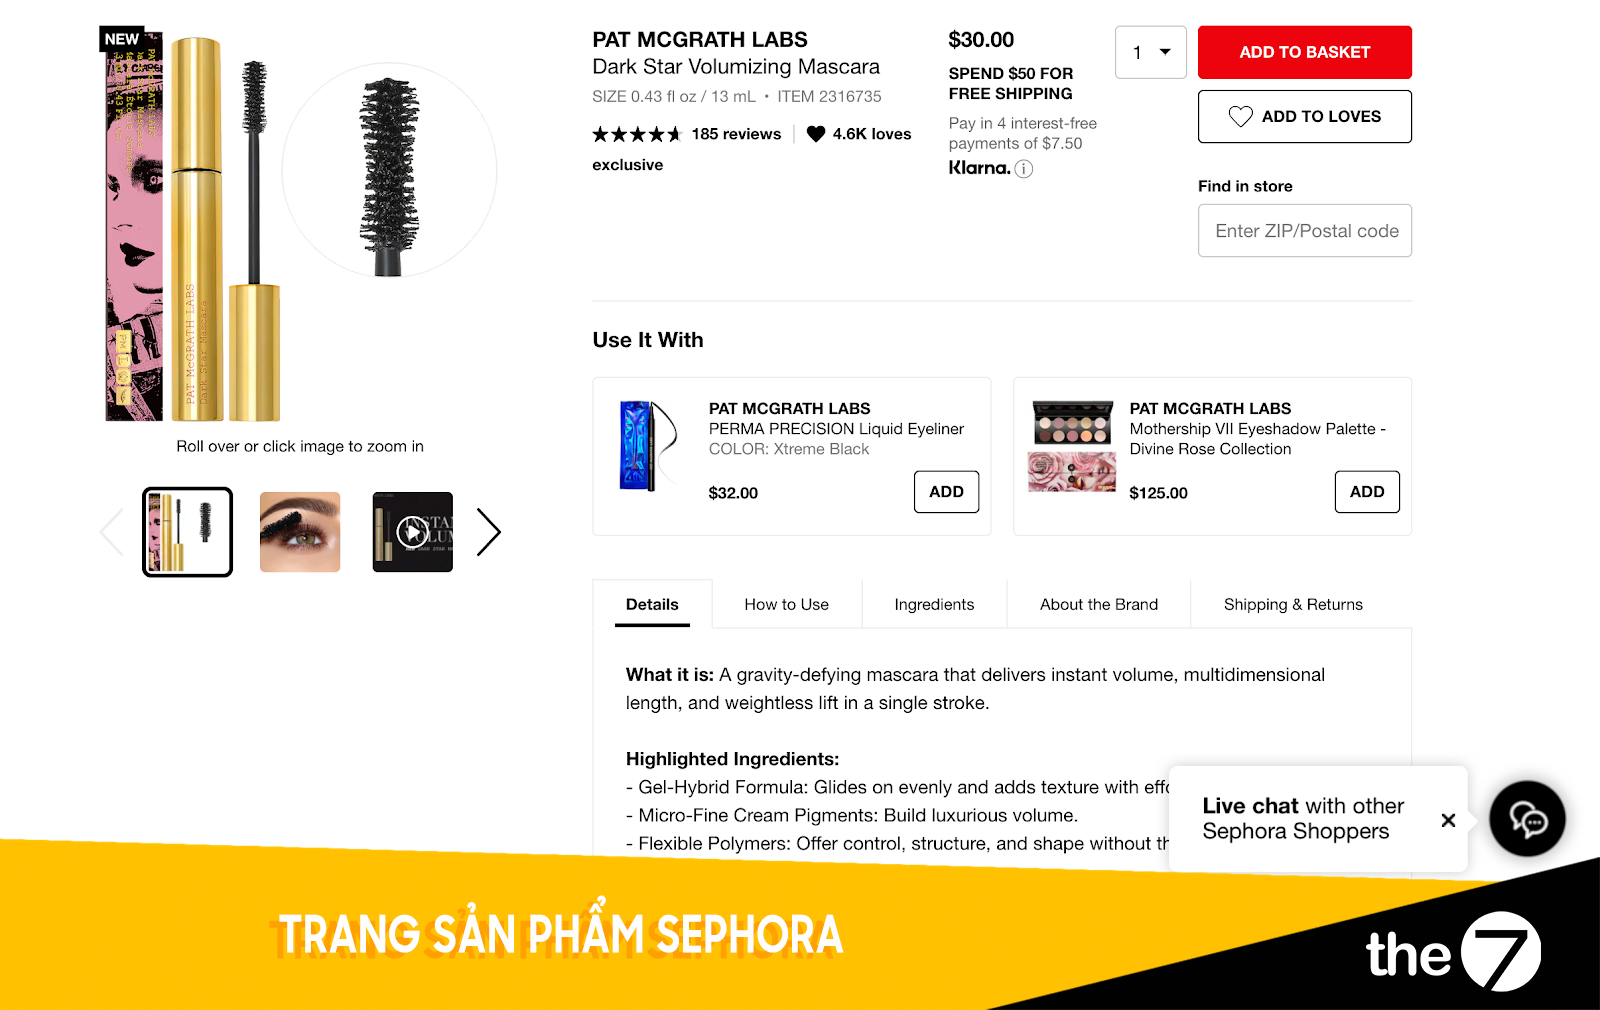 Trang sản phẩm Sephora - Thiết kế website bán hàng 